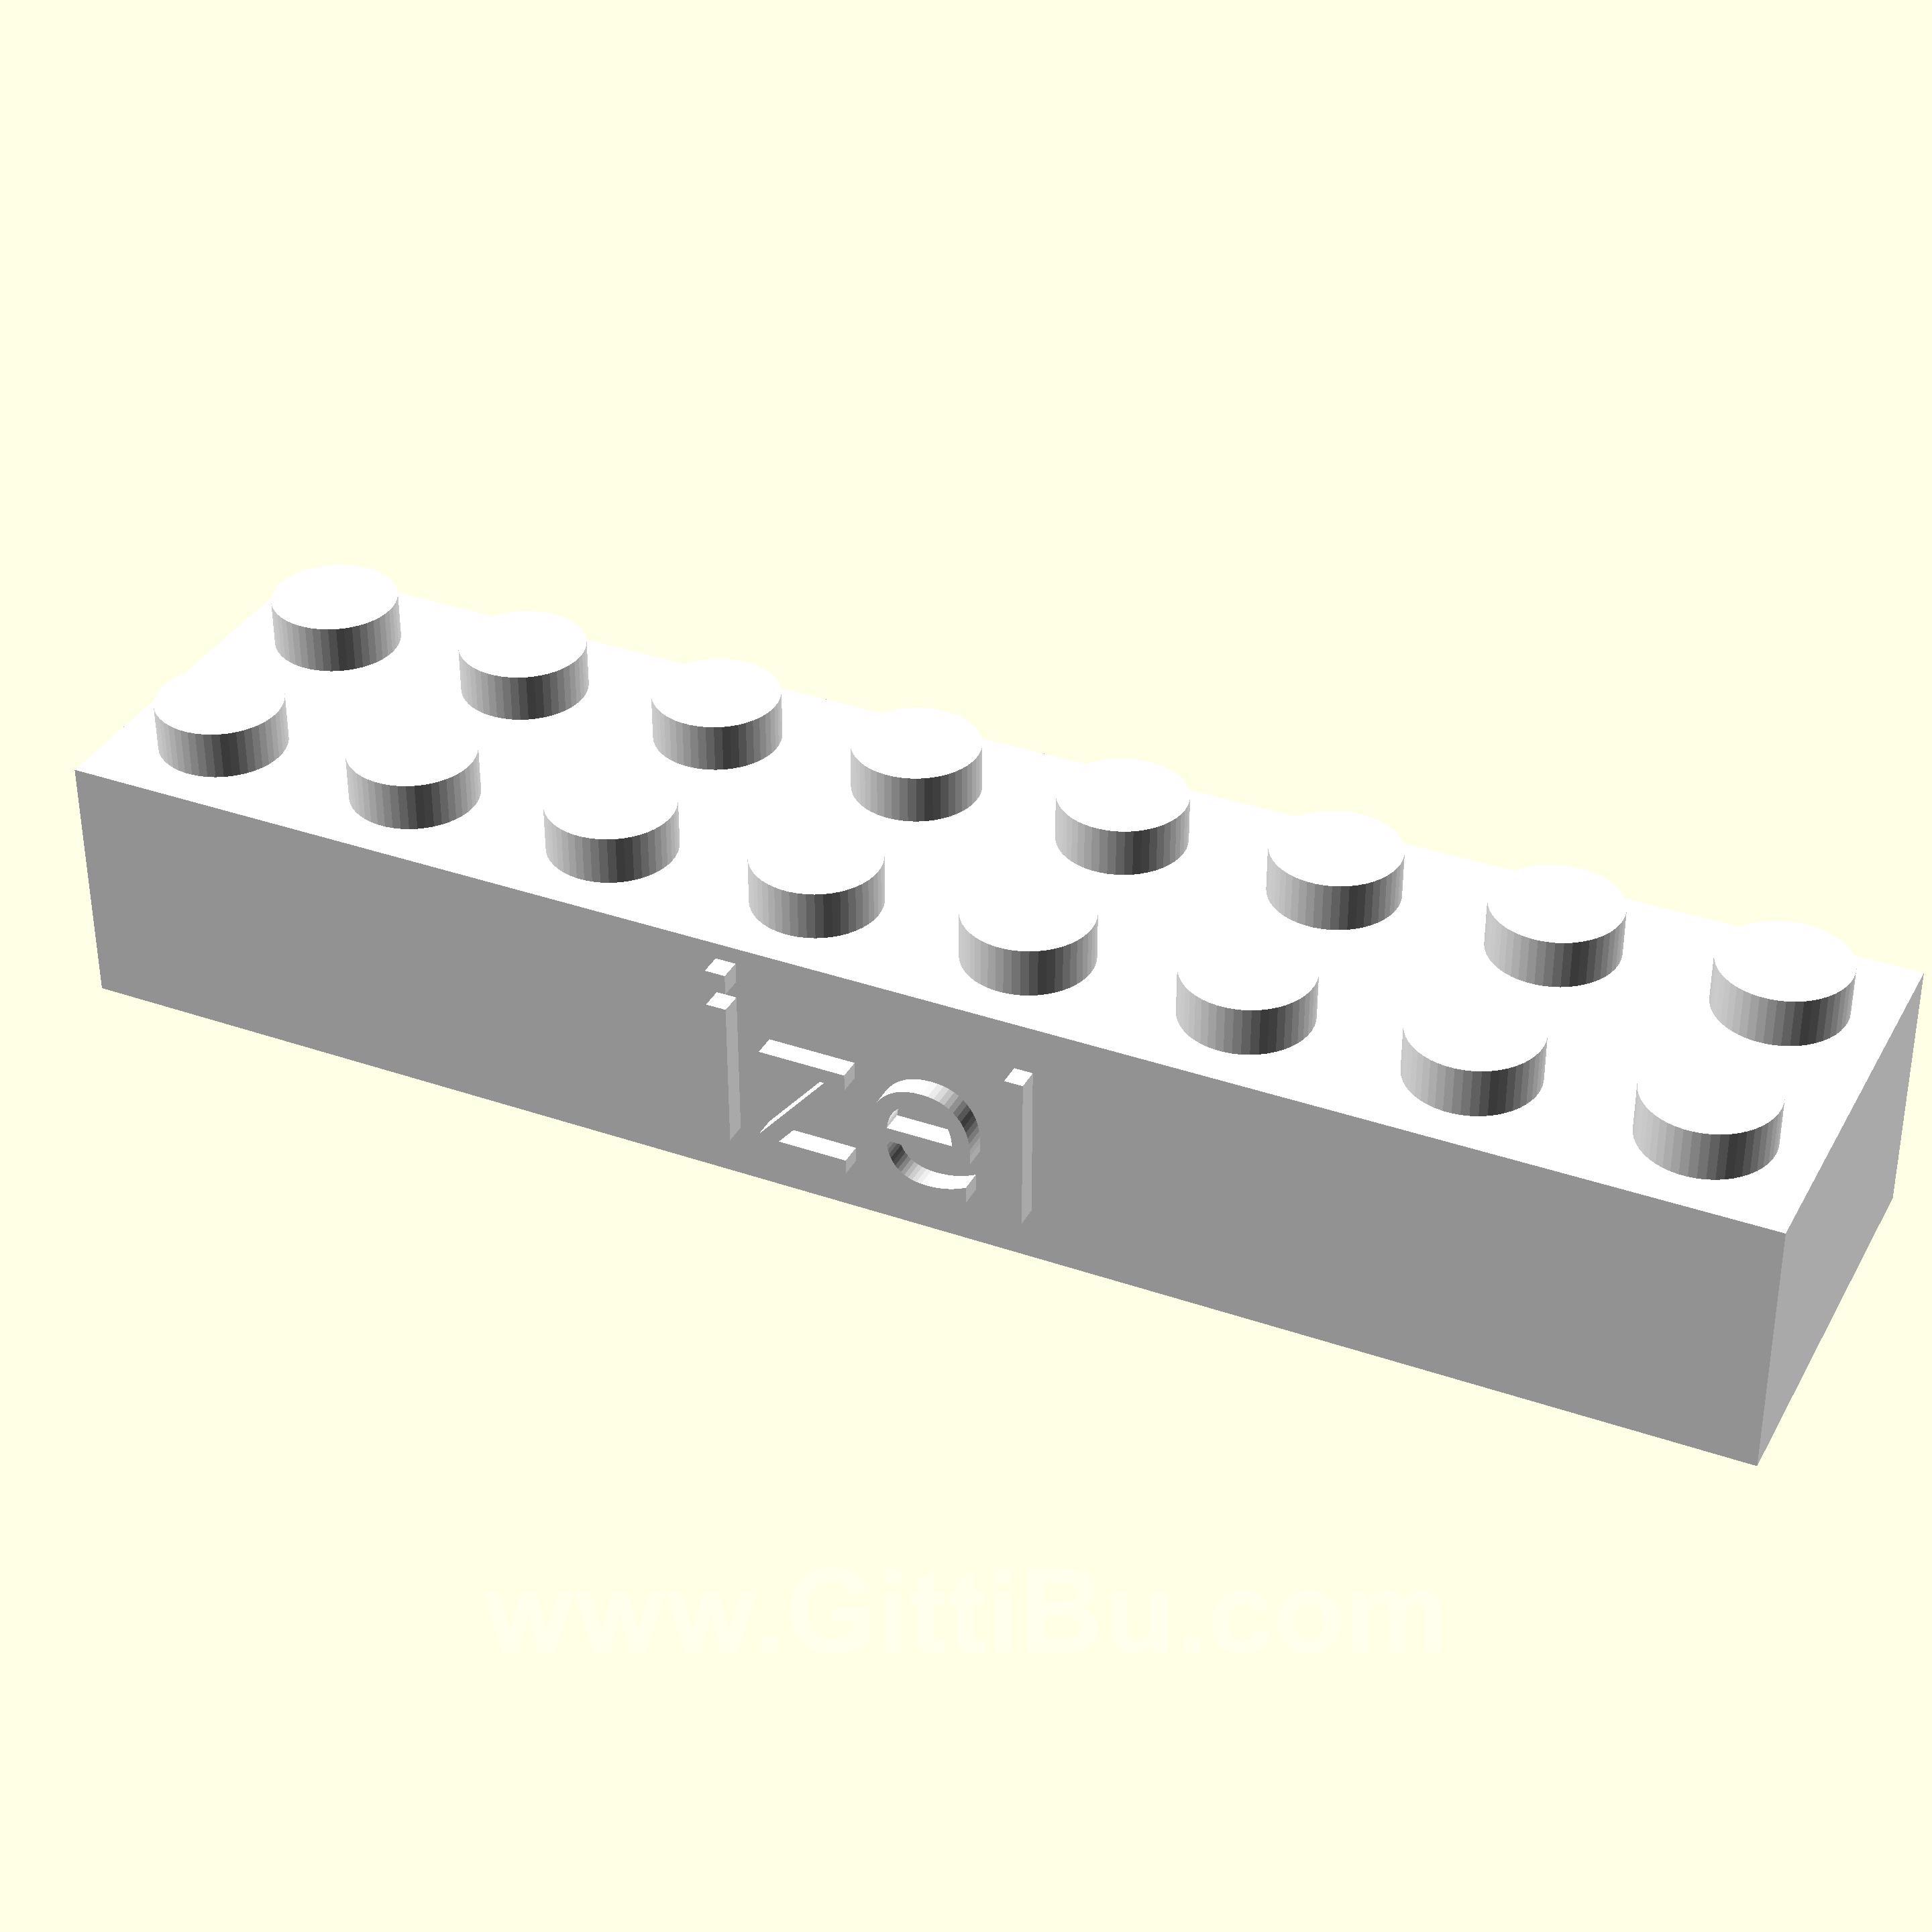 İzel Kişiye Özel Üretim Lego Sevgiliye Oyuncak Eşe Hediyelik Organik Plastikten